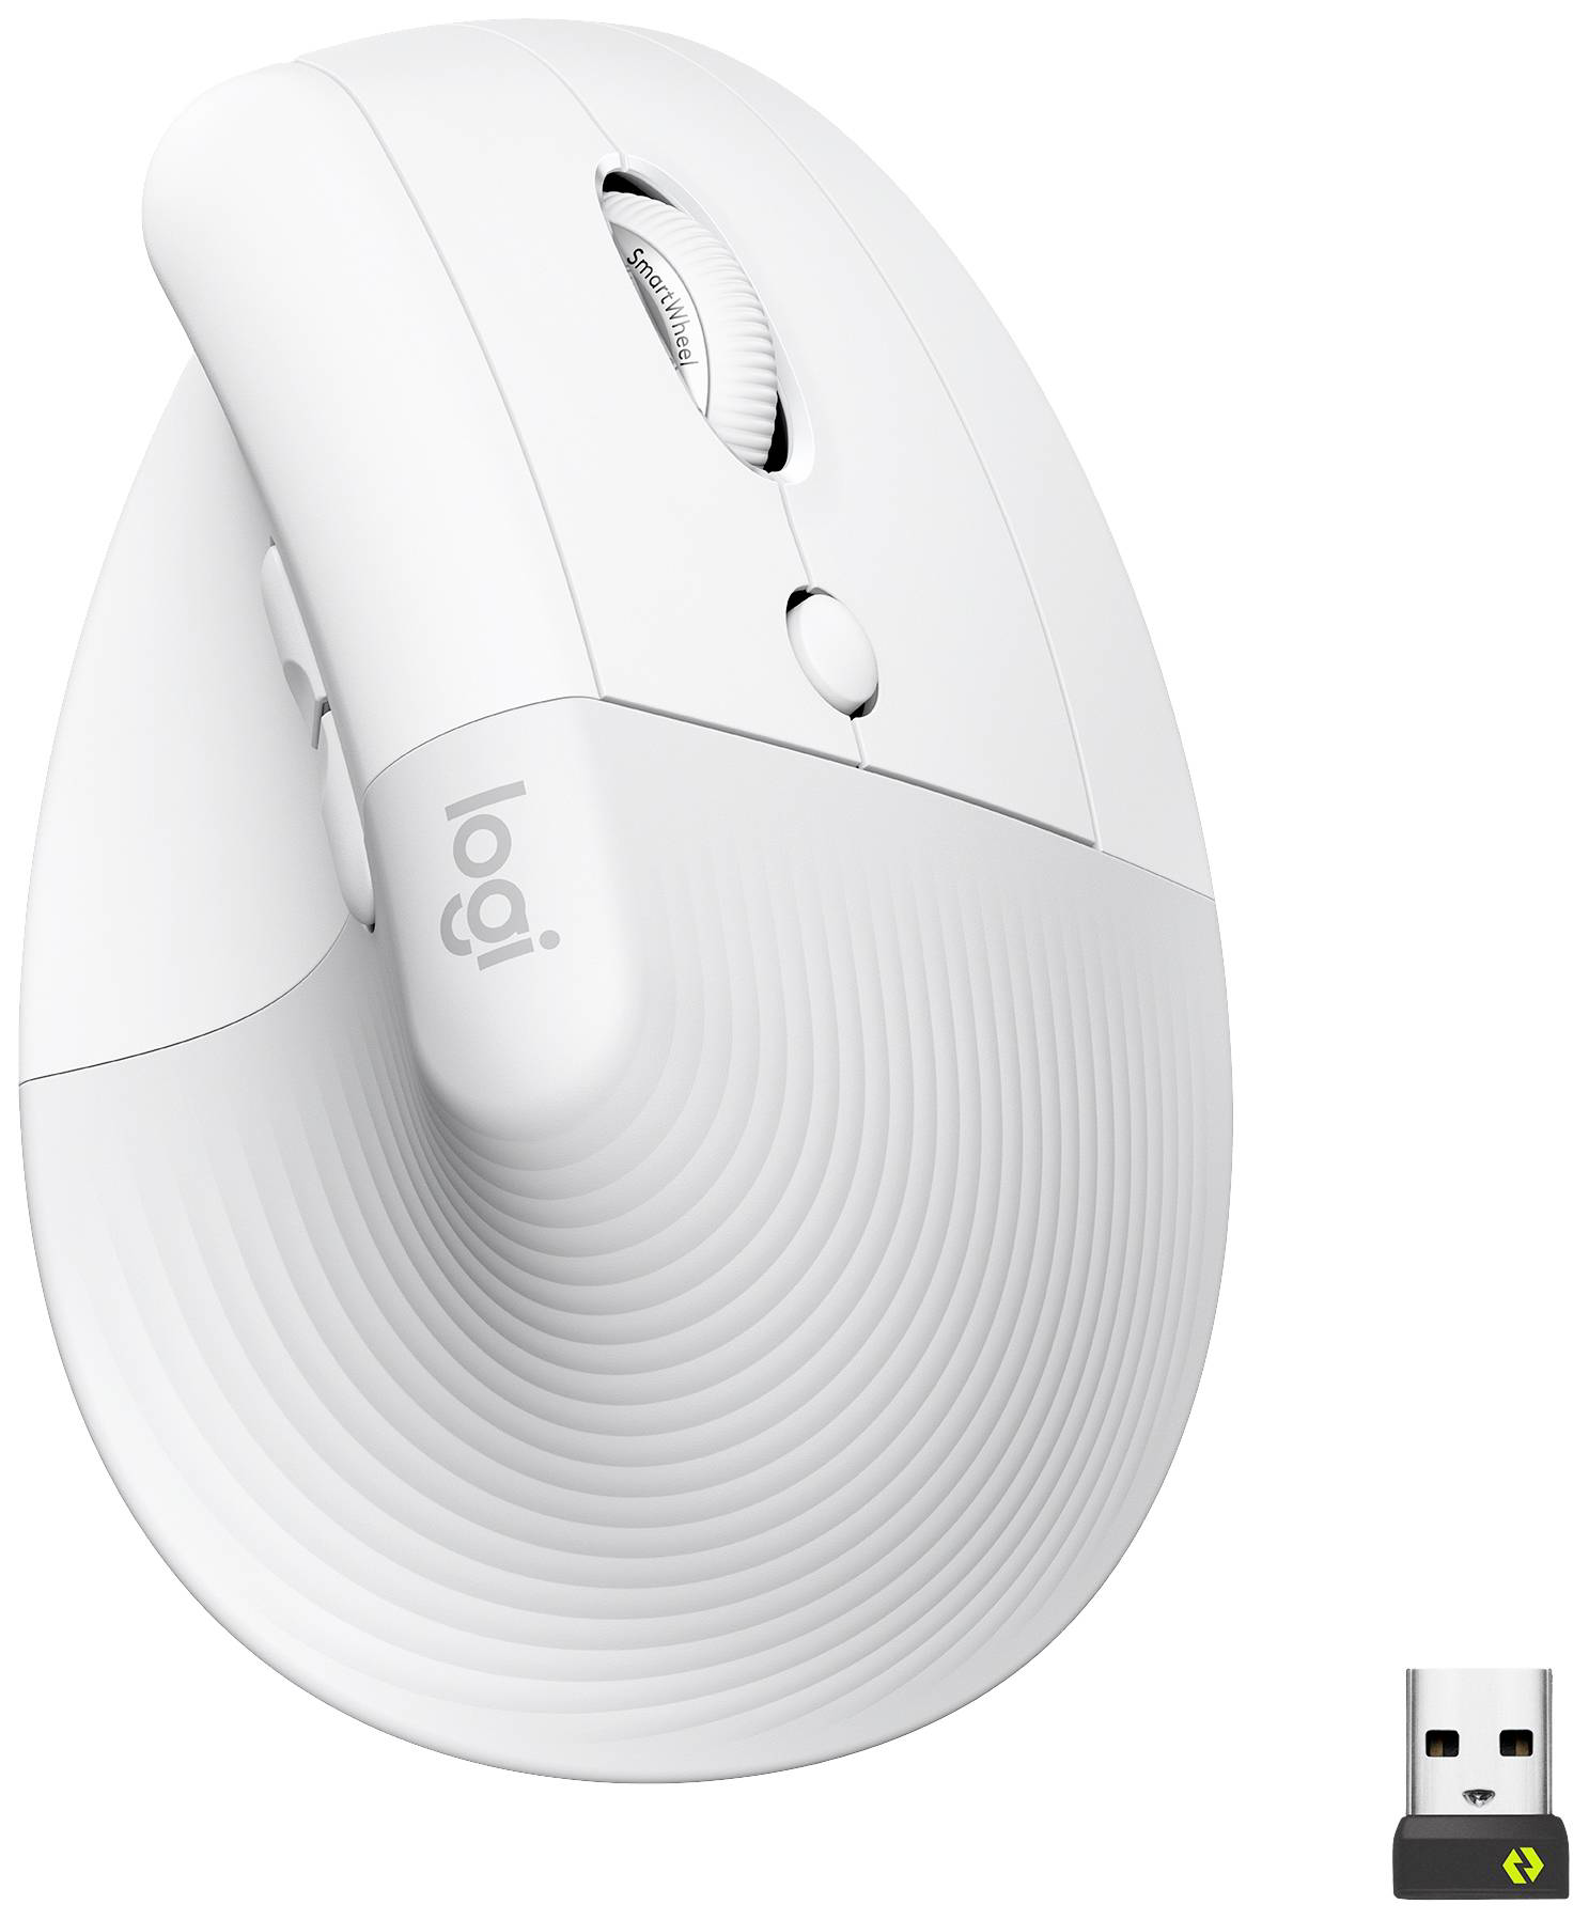 Logitech - Lift souris sans fil droitier ergonomique verticale - Blanc cassé - 6 Boutons 4000 dpi